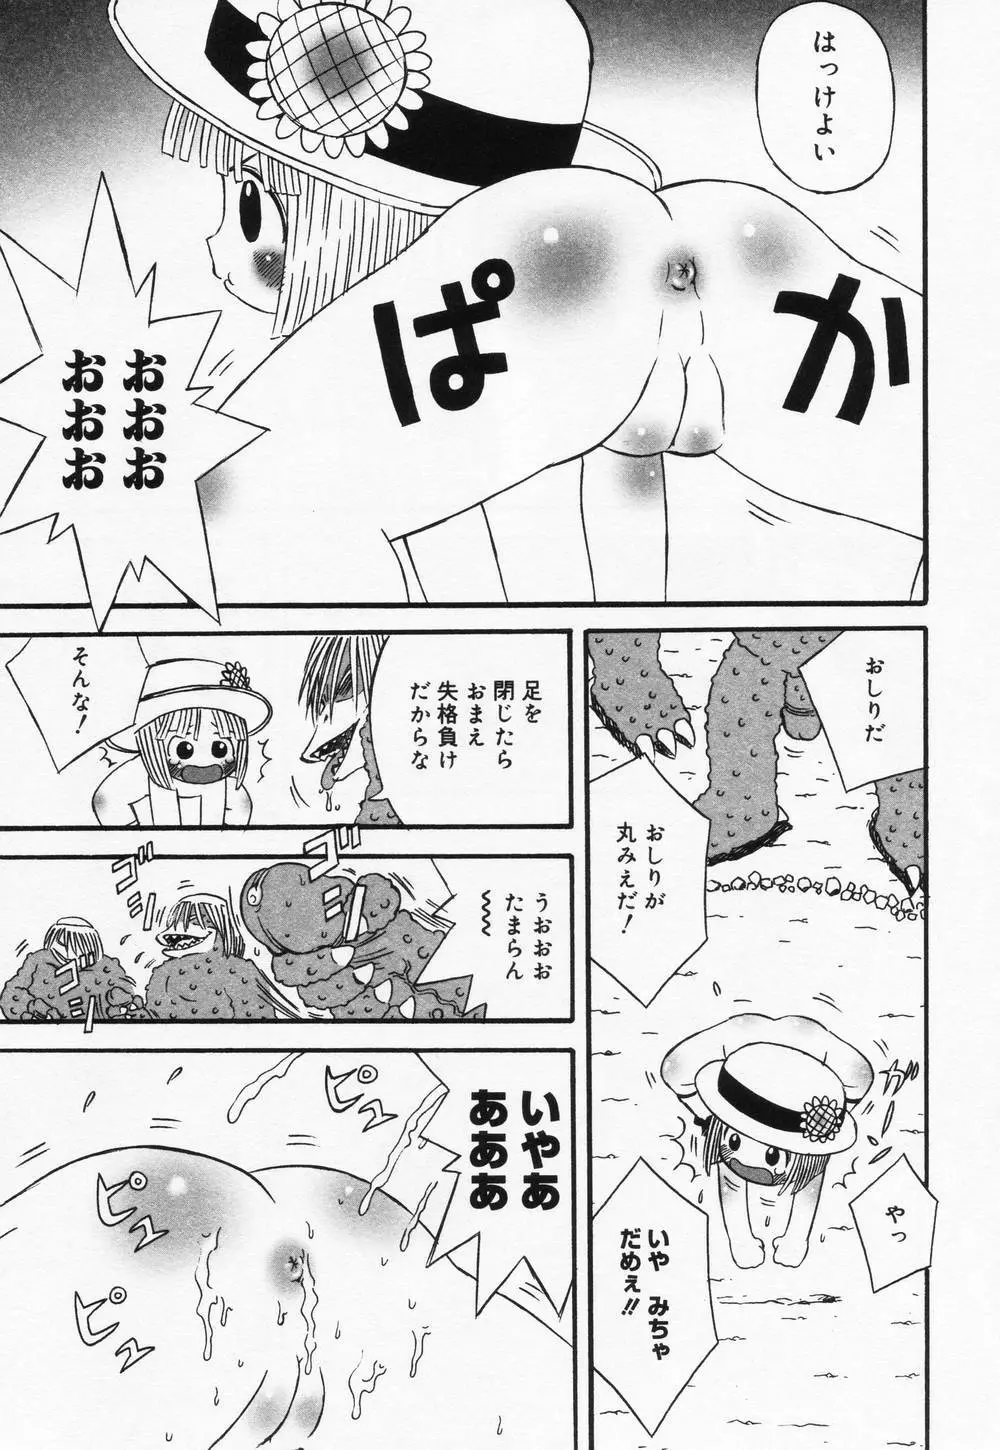 ロリアナル ロリアナルのエロアニメ 16件 - エロアニメタレスト